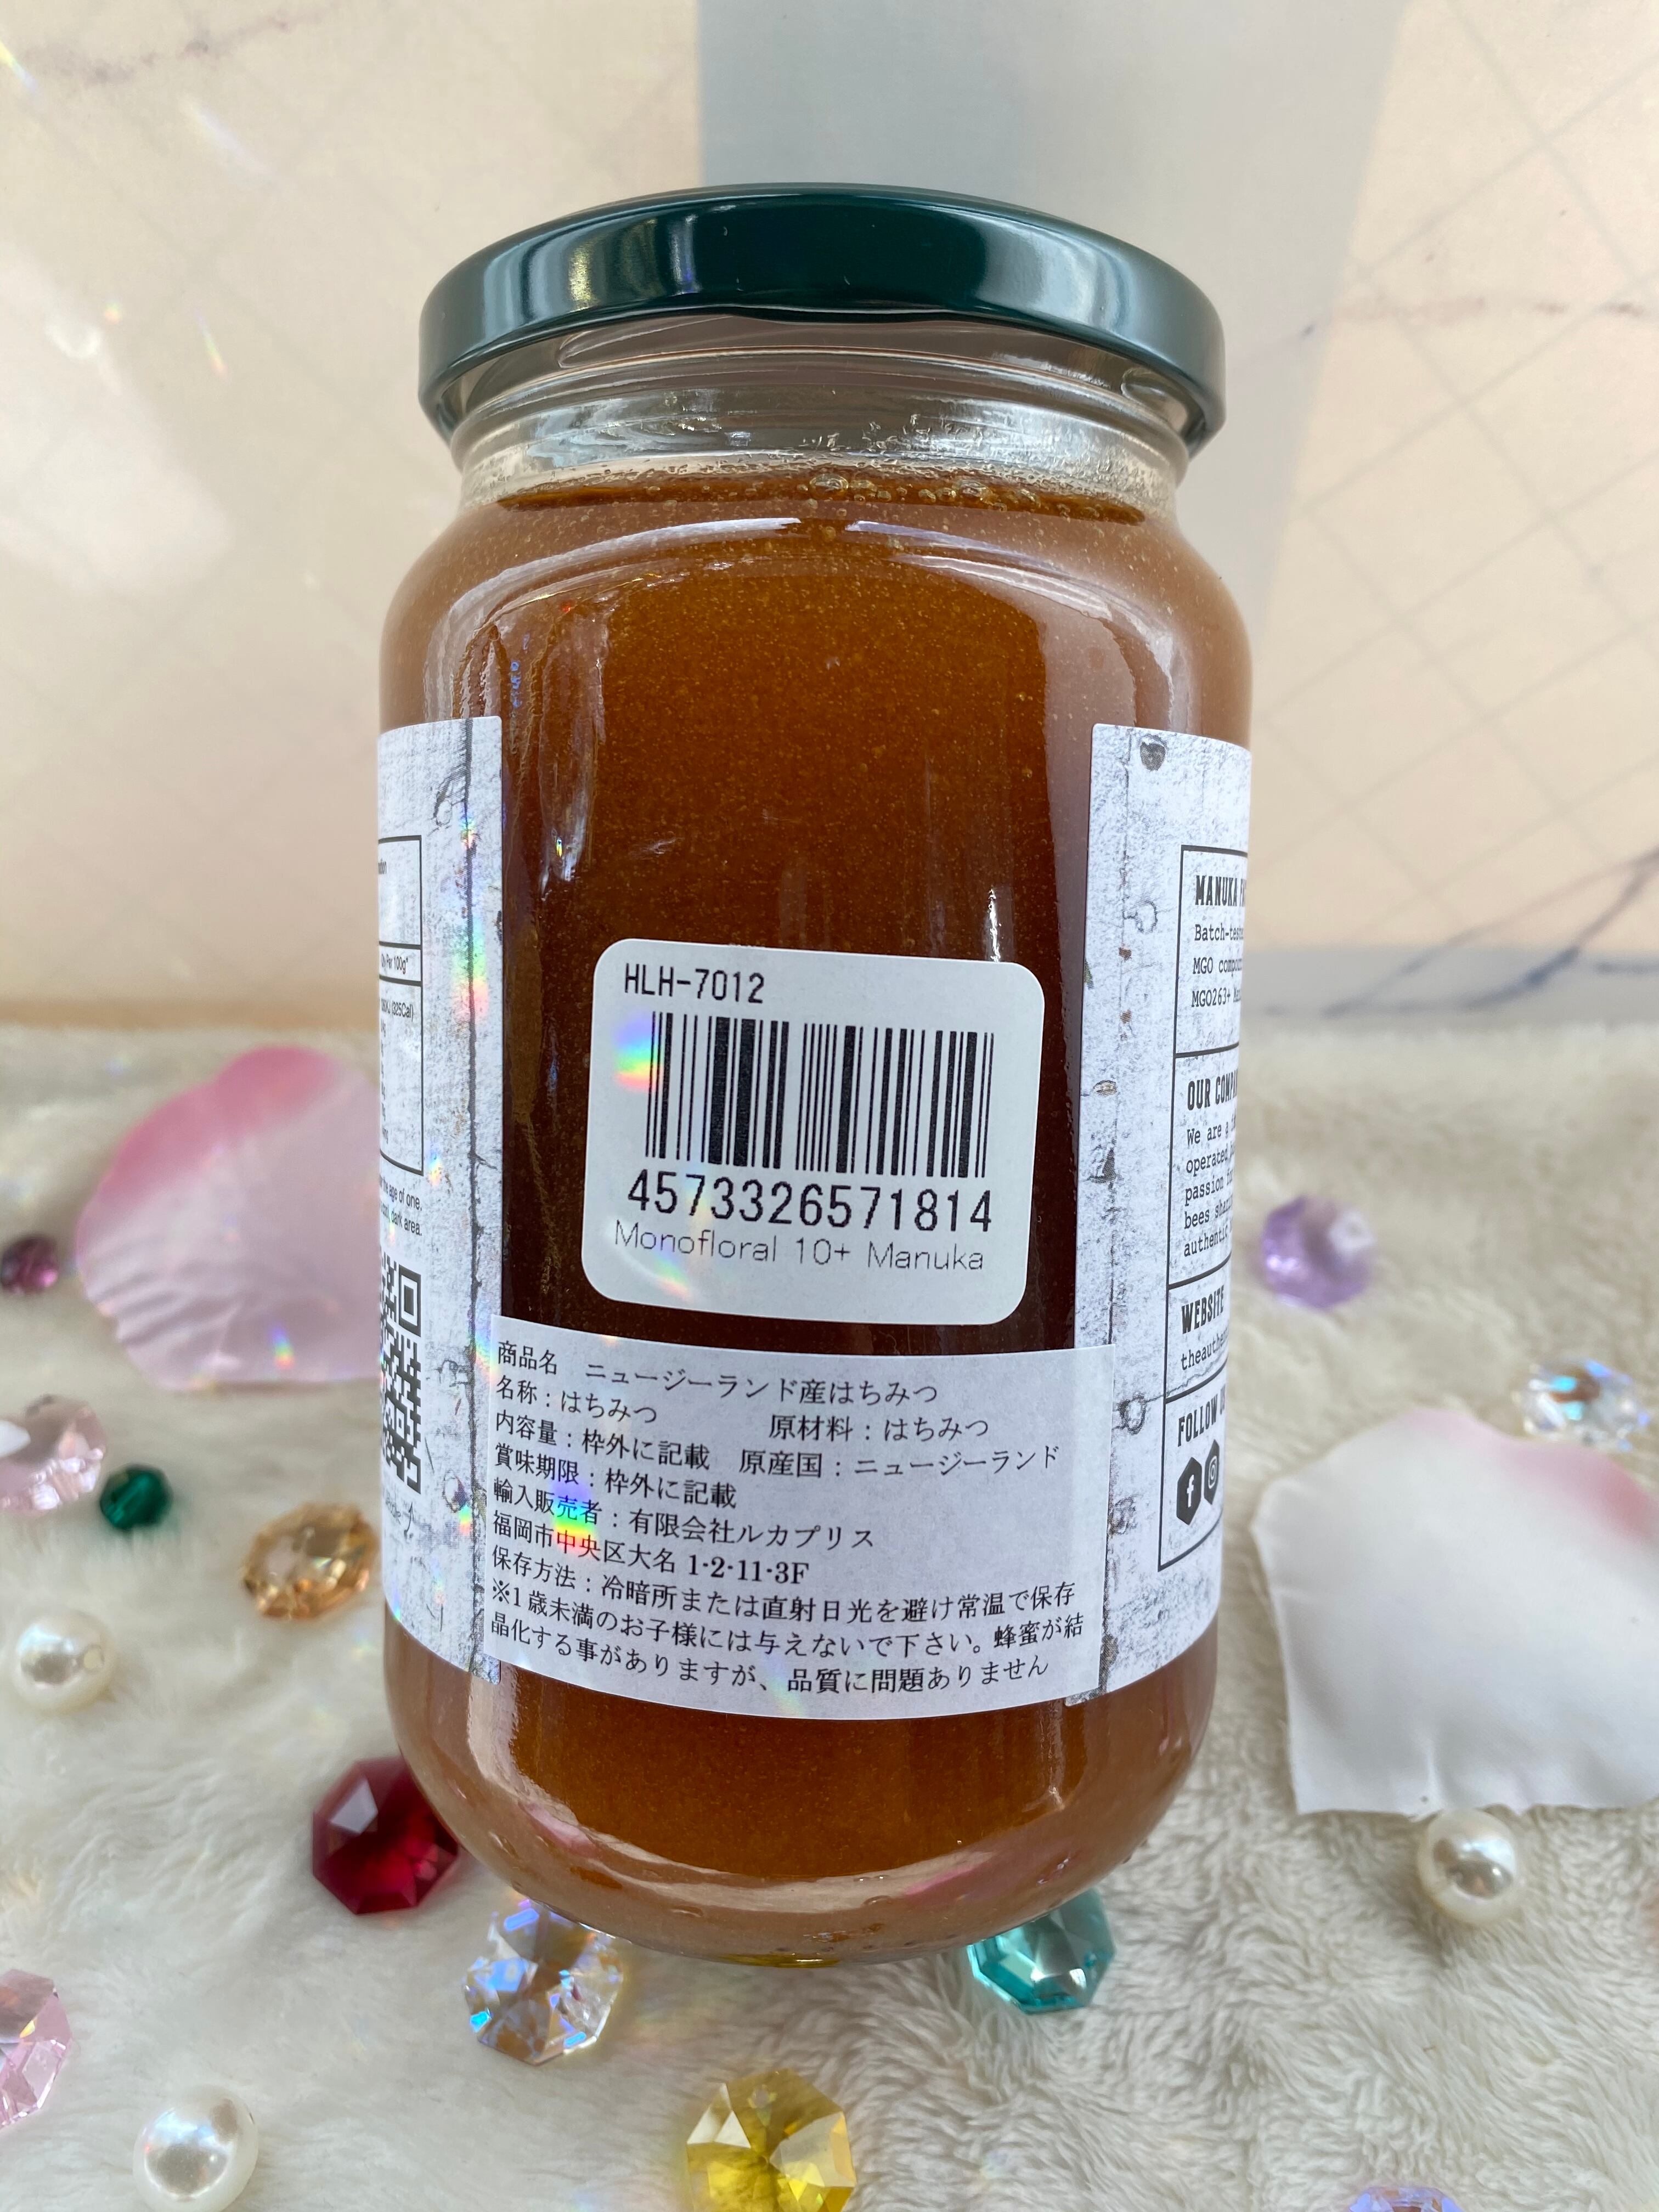 Monofloral 10+ Manuka Honey 500g | Kanasandoo